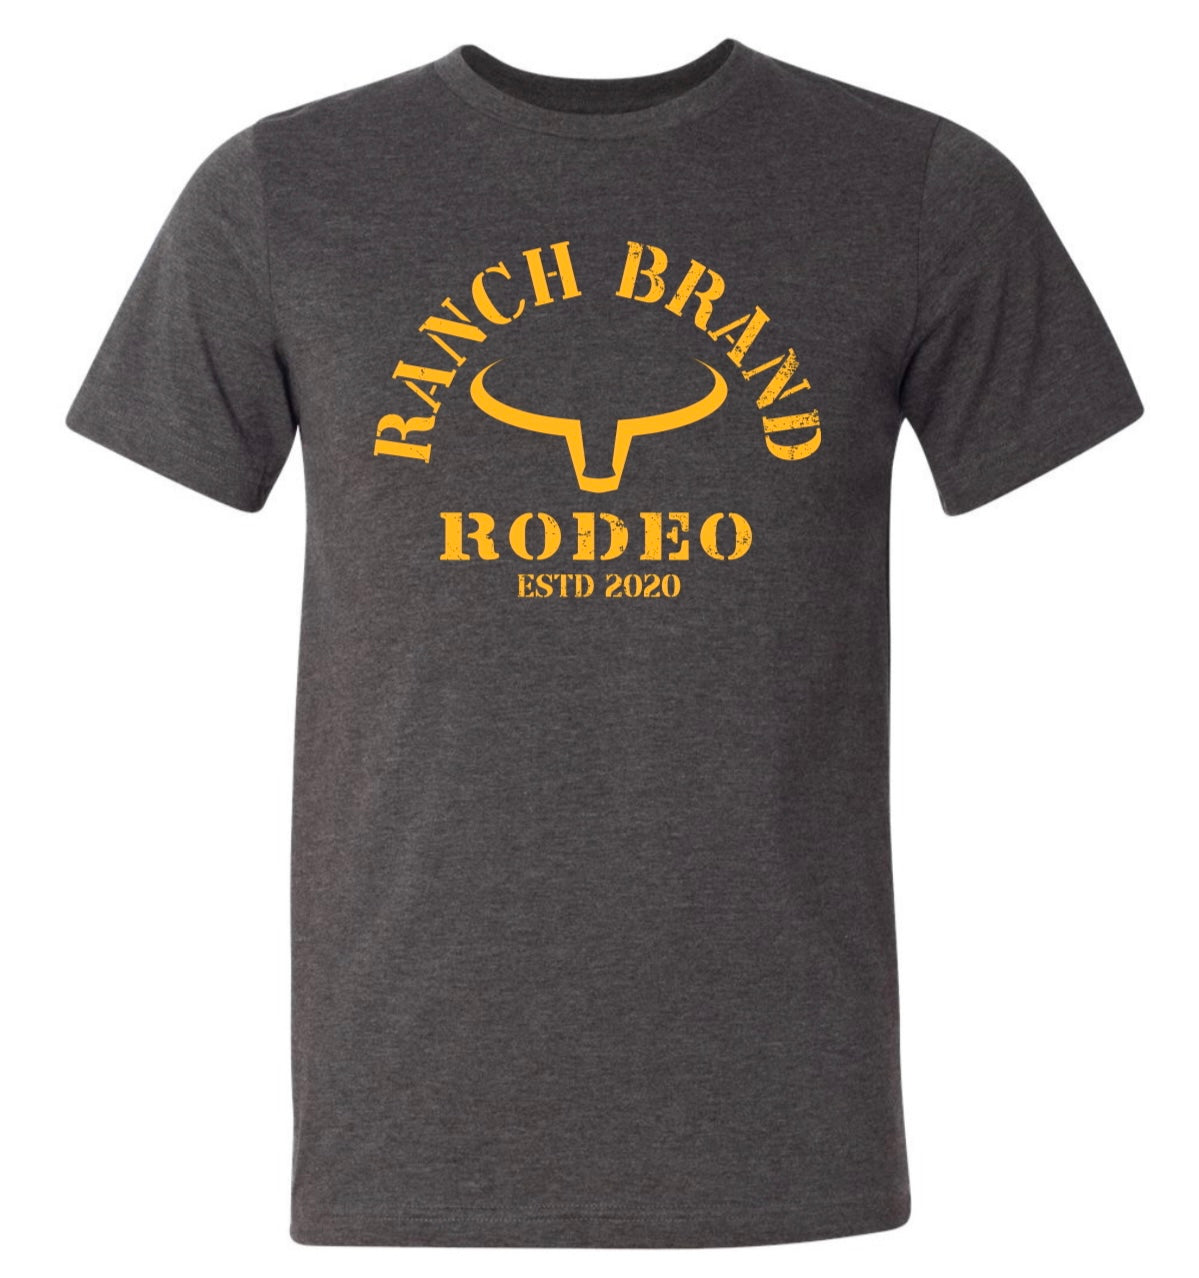 Ranch Brand | Rodeo Homme | Gris foncé logo Jaune